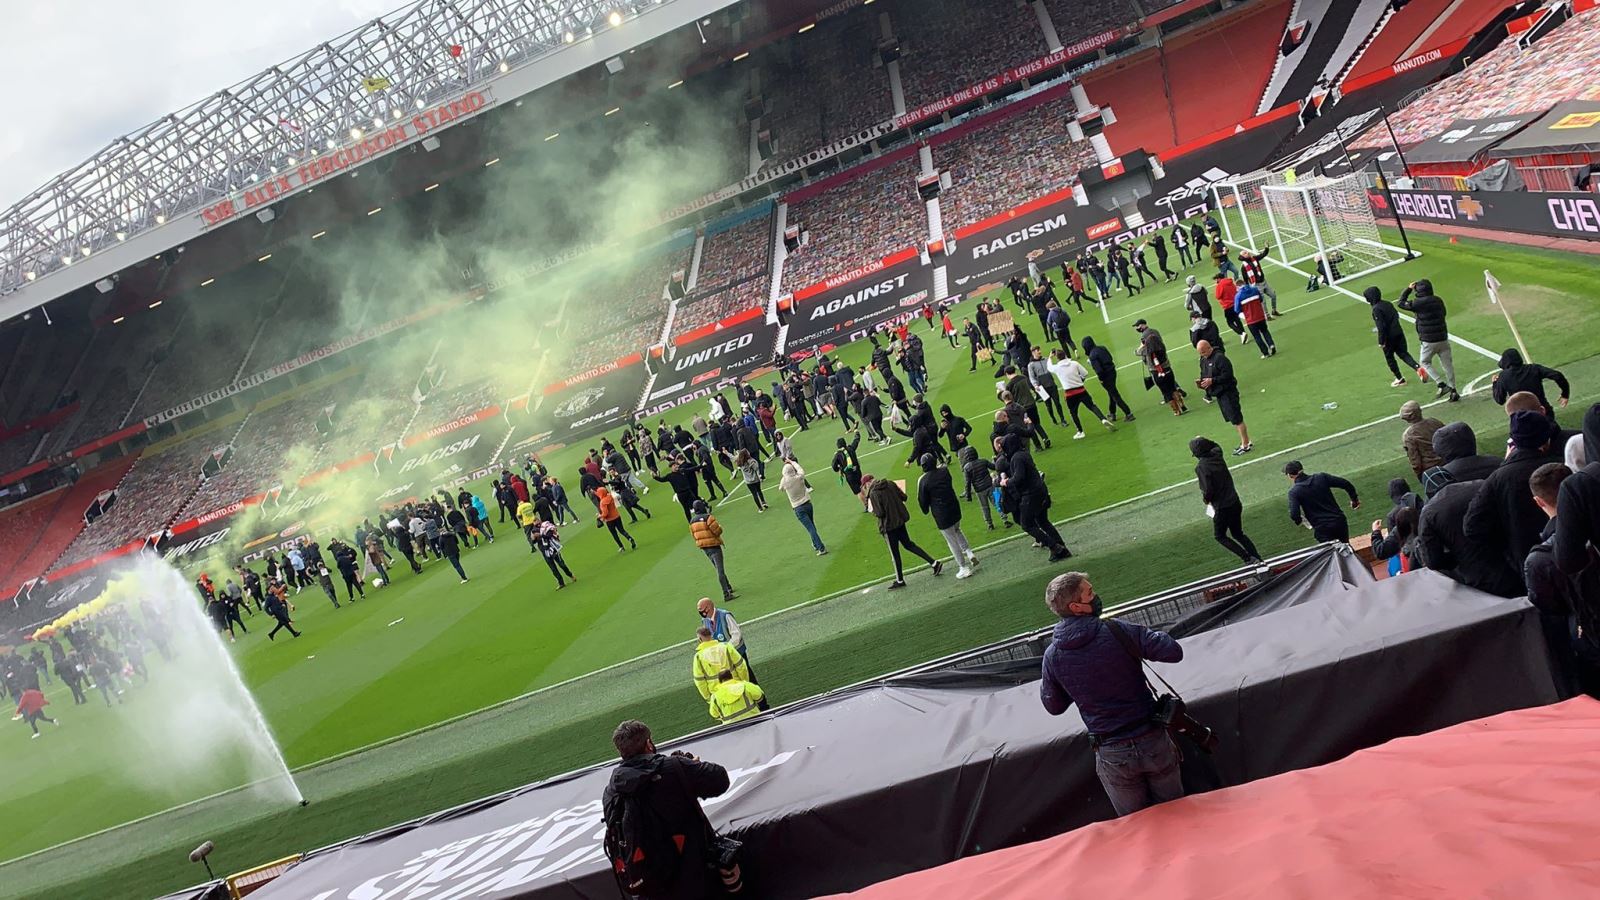 CĐV quá khích tràn vào sân Old Trafford với bom khói